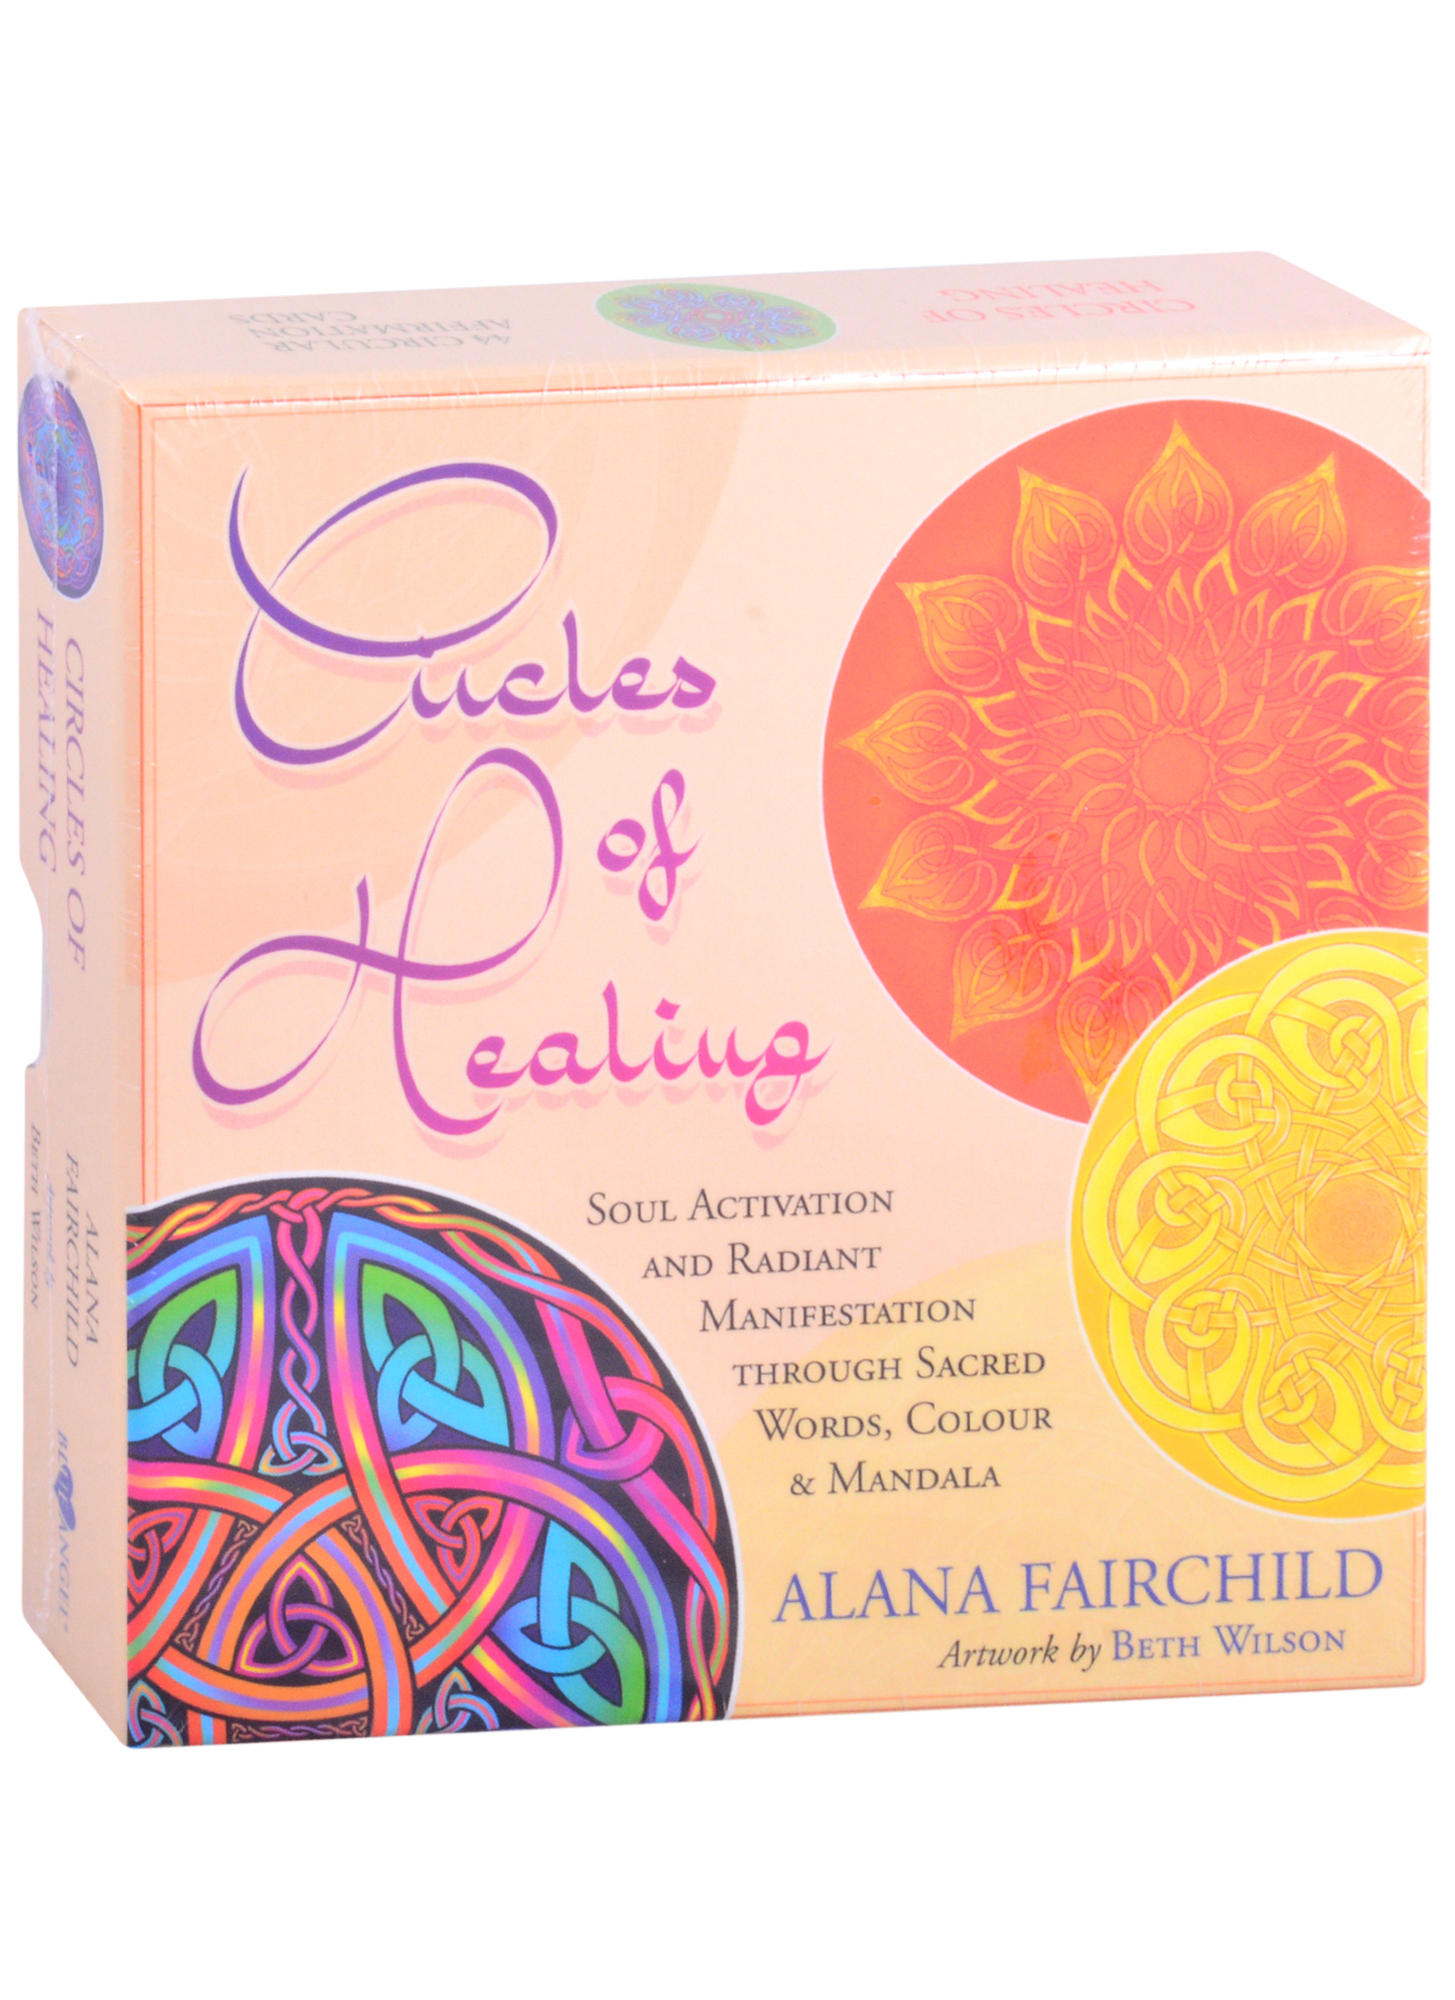 Фэрчайлд Алана Circles of Healing фэрчайлд алана circles of healing